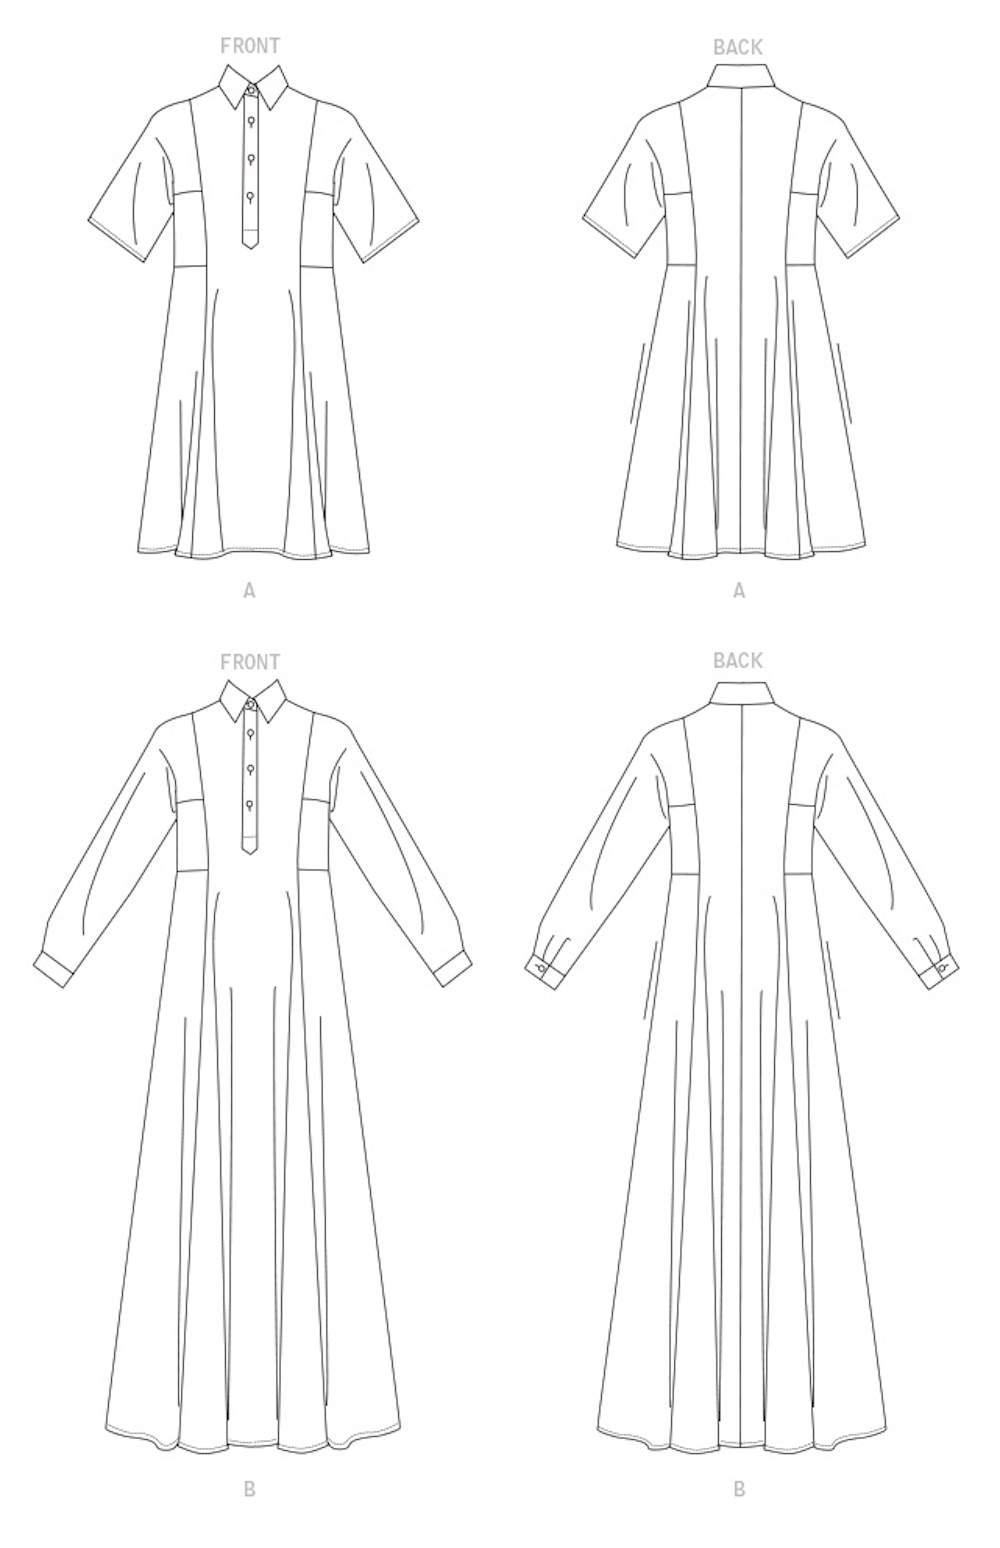 Vogue® Patterns Papierschnittmuster Kleid V1698